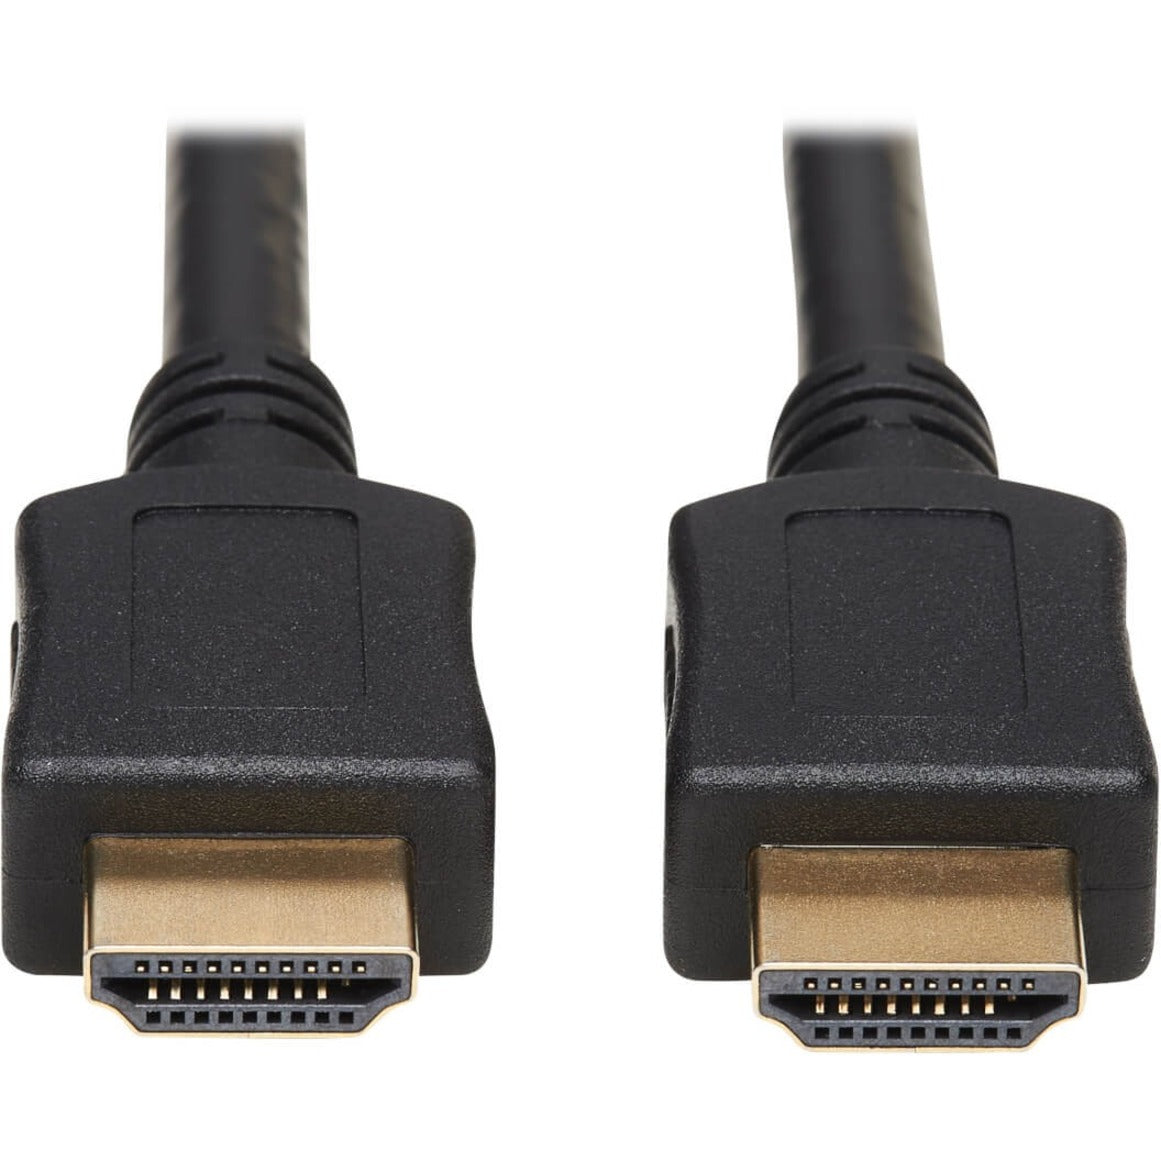 Tripp Lite P782-006-HA HDMI KVM Cable Kit - 4K HDMI, USB 2.0, 3.5 mm Audio, 6 ft., Black